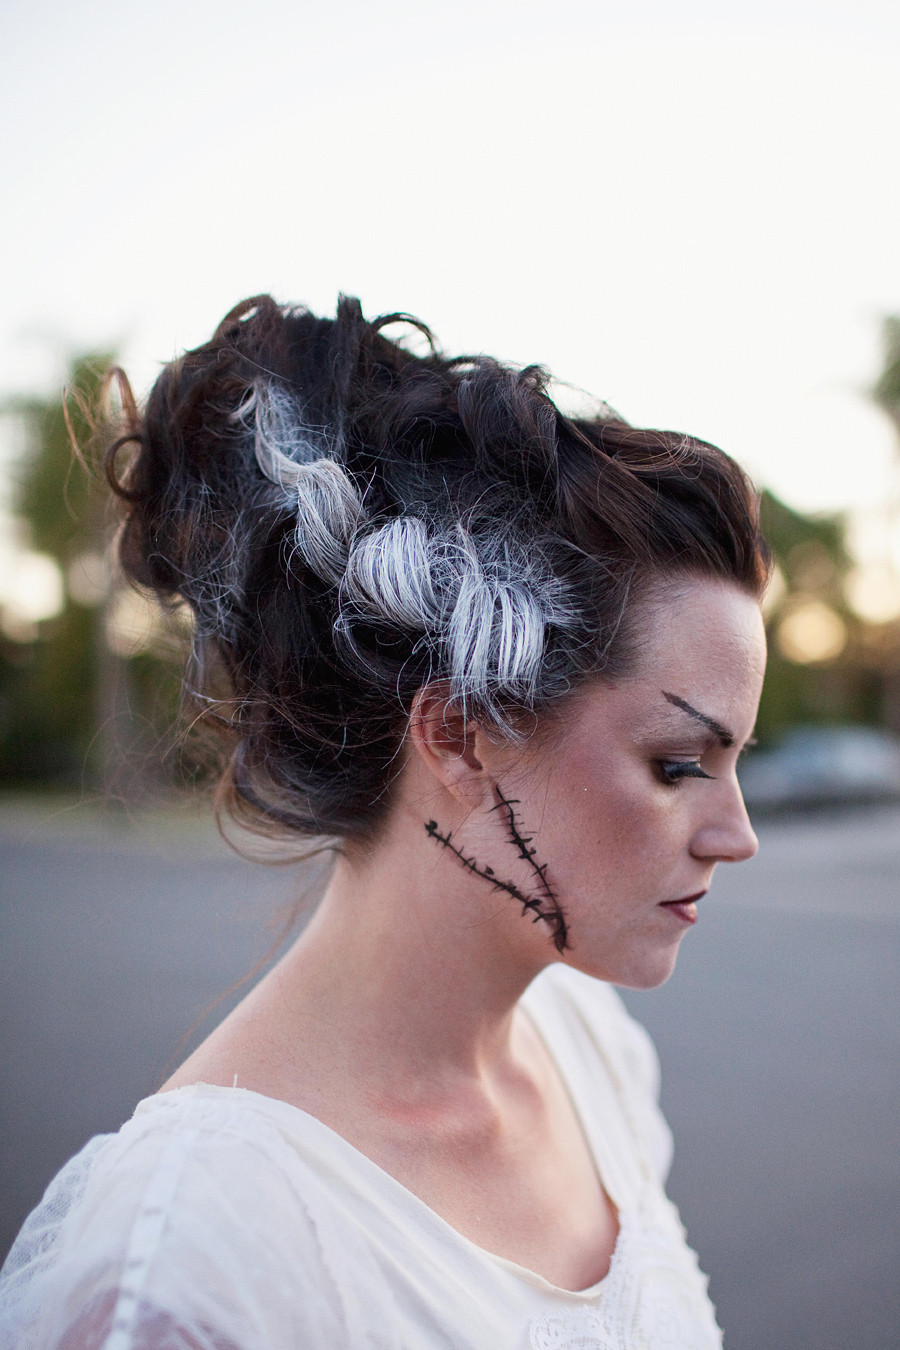 DIY Bride Of Frankenstein Hair
 TELL MONSTER FAMILY COSTUME DIY Tell Love and PartyTell